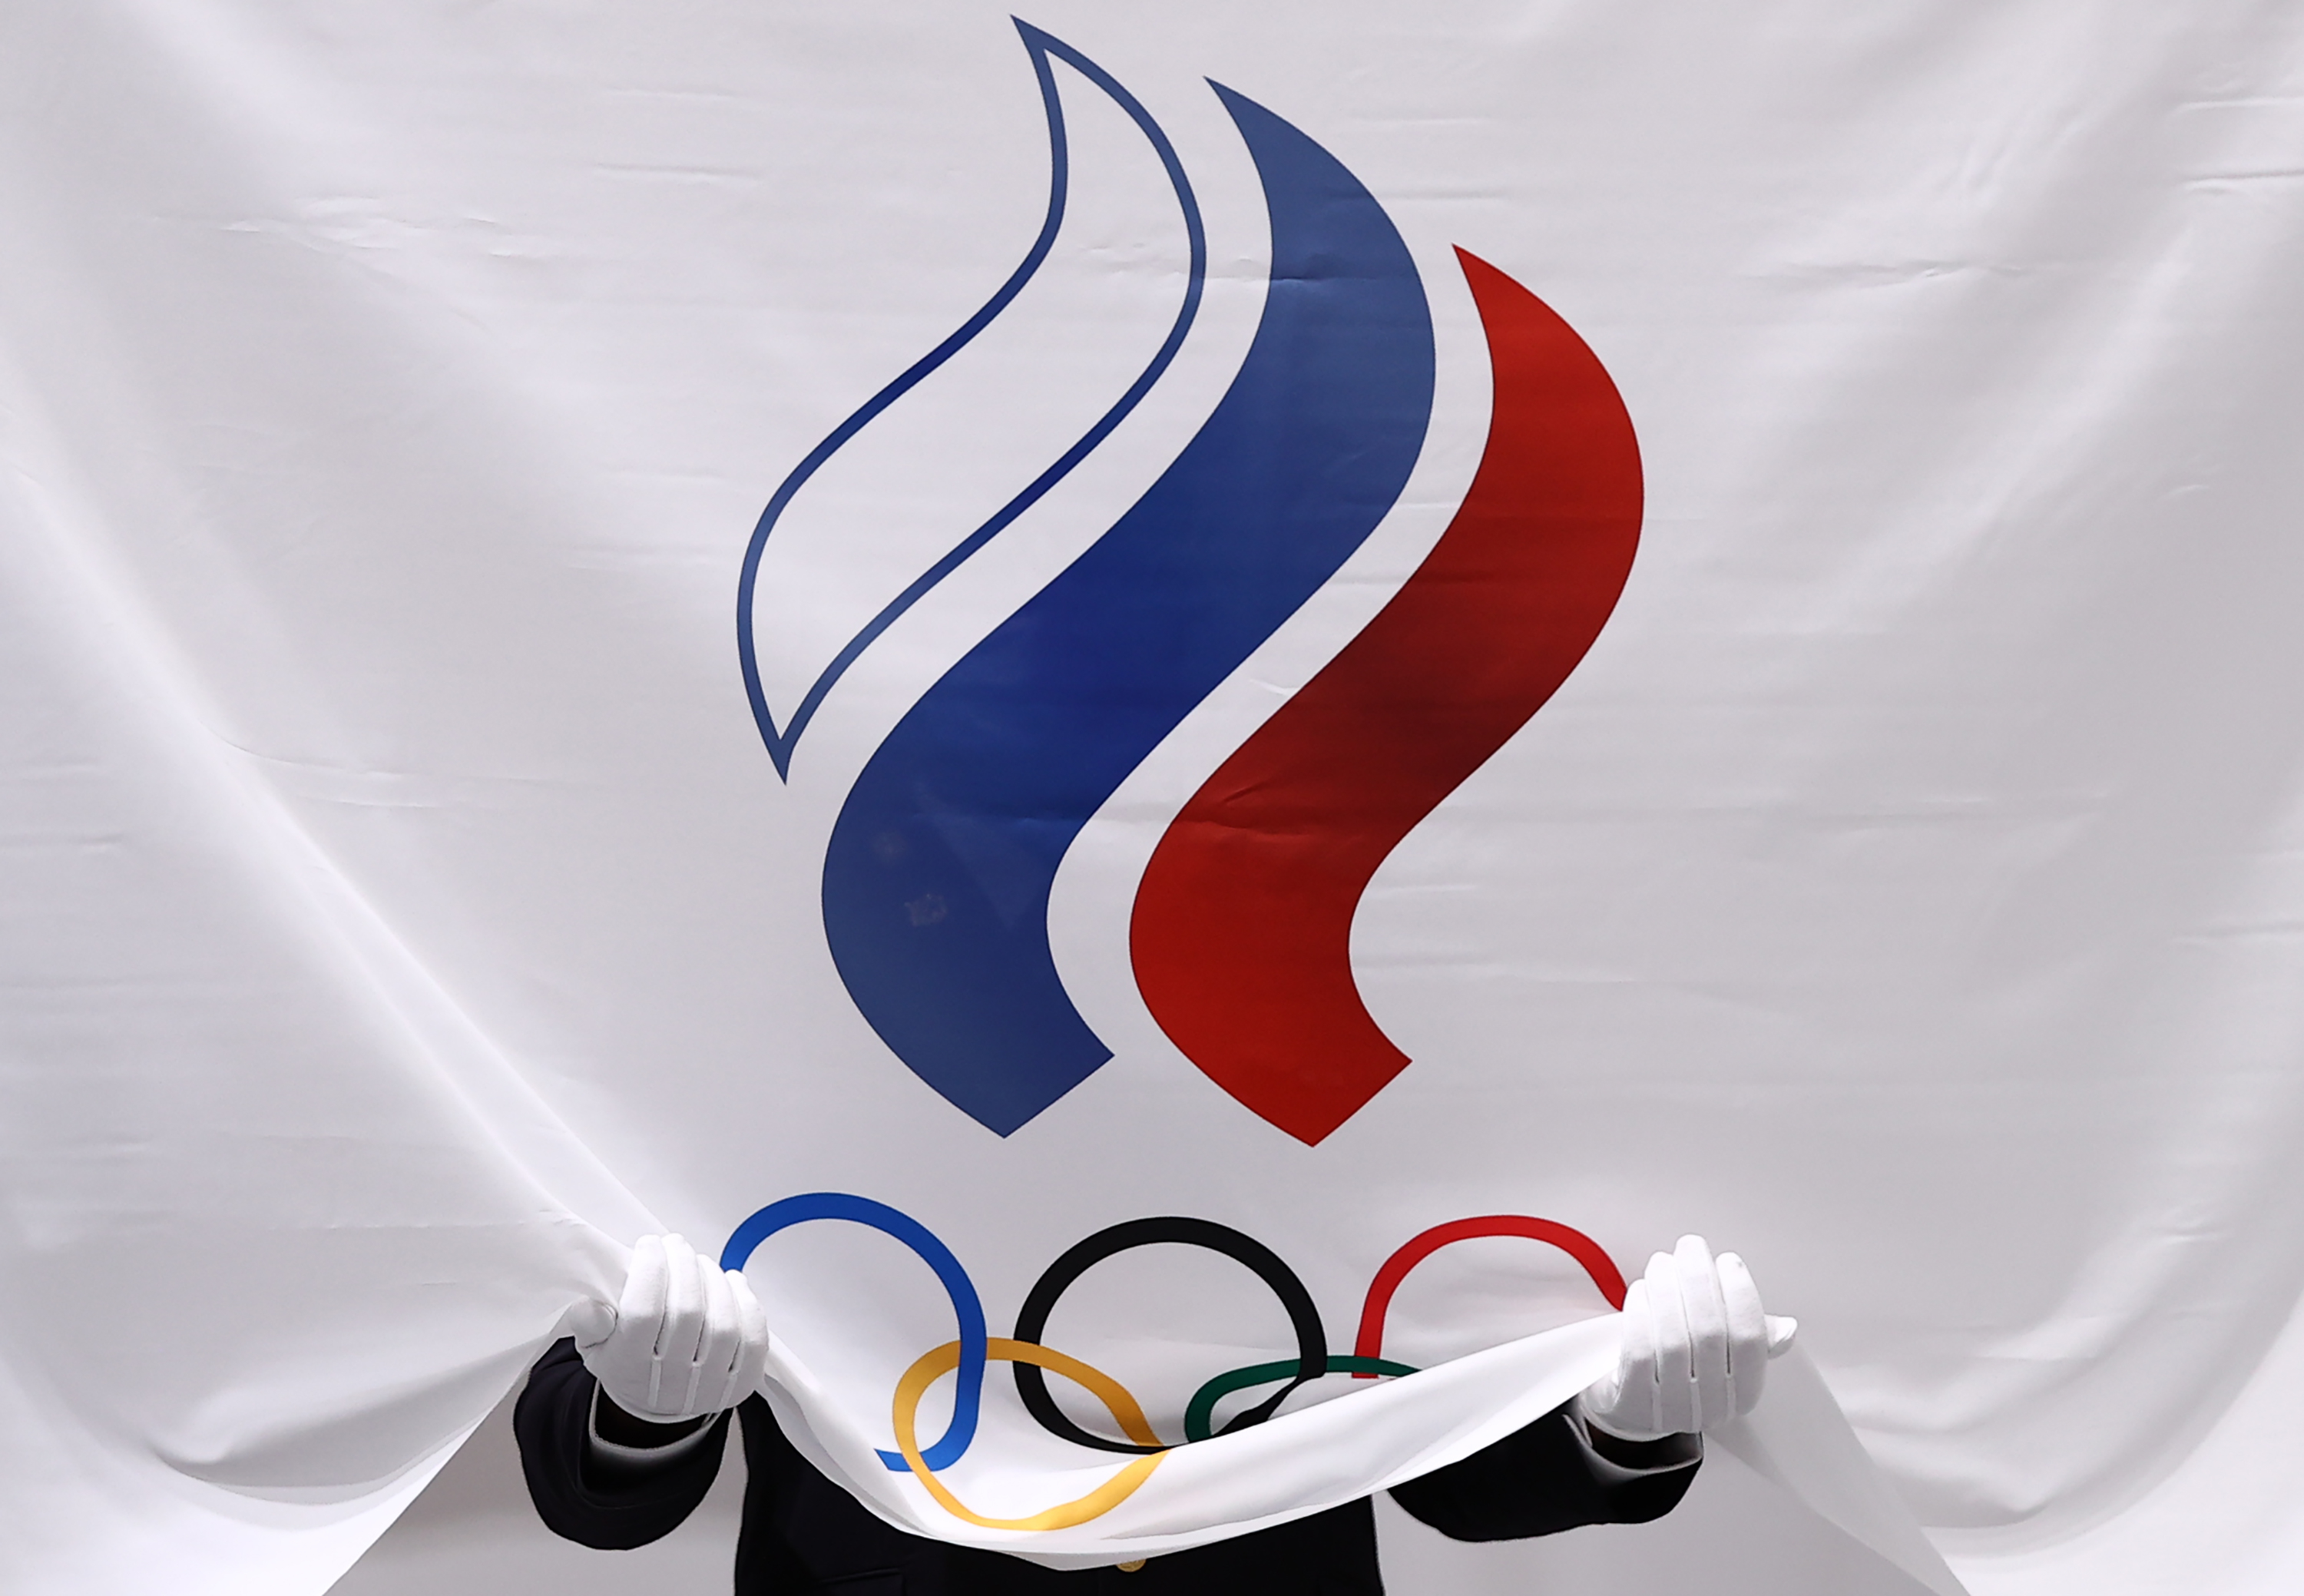 Депутат допустил предвзятое судейство к российским спортсменам на Олимпиаде в Пекине 